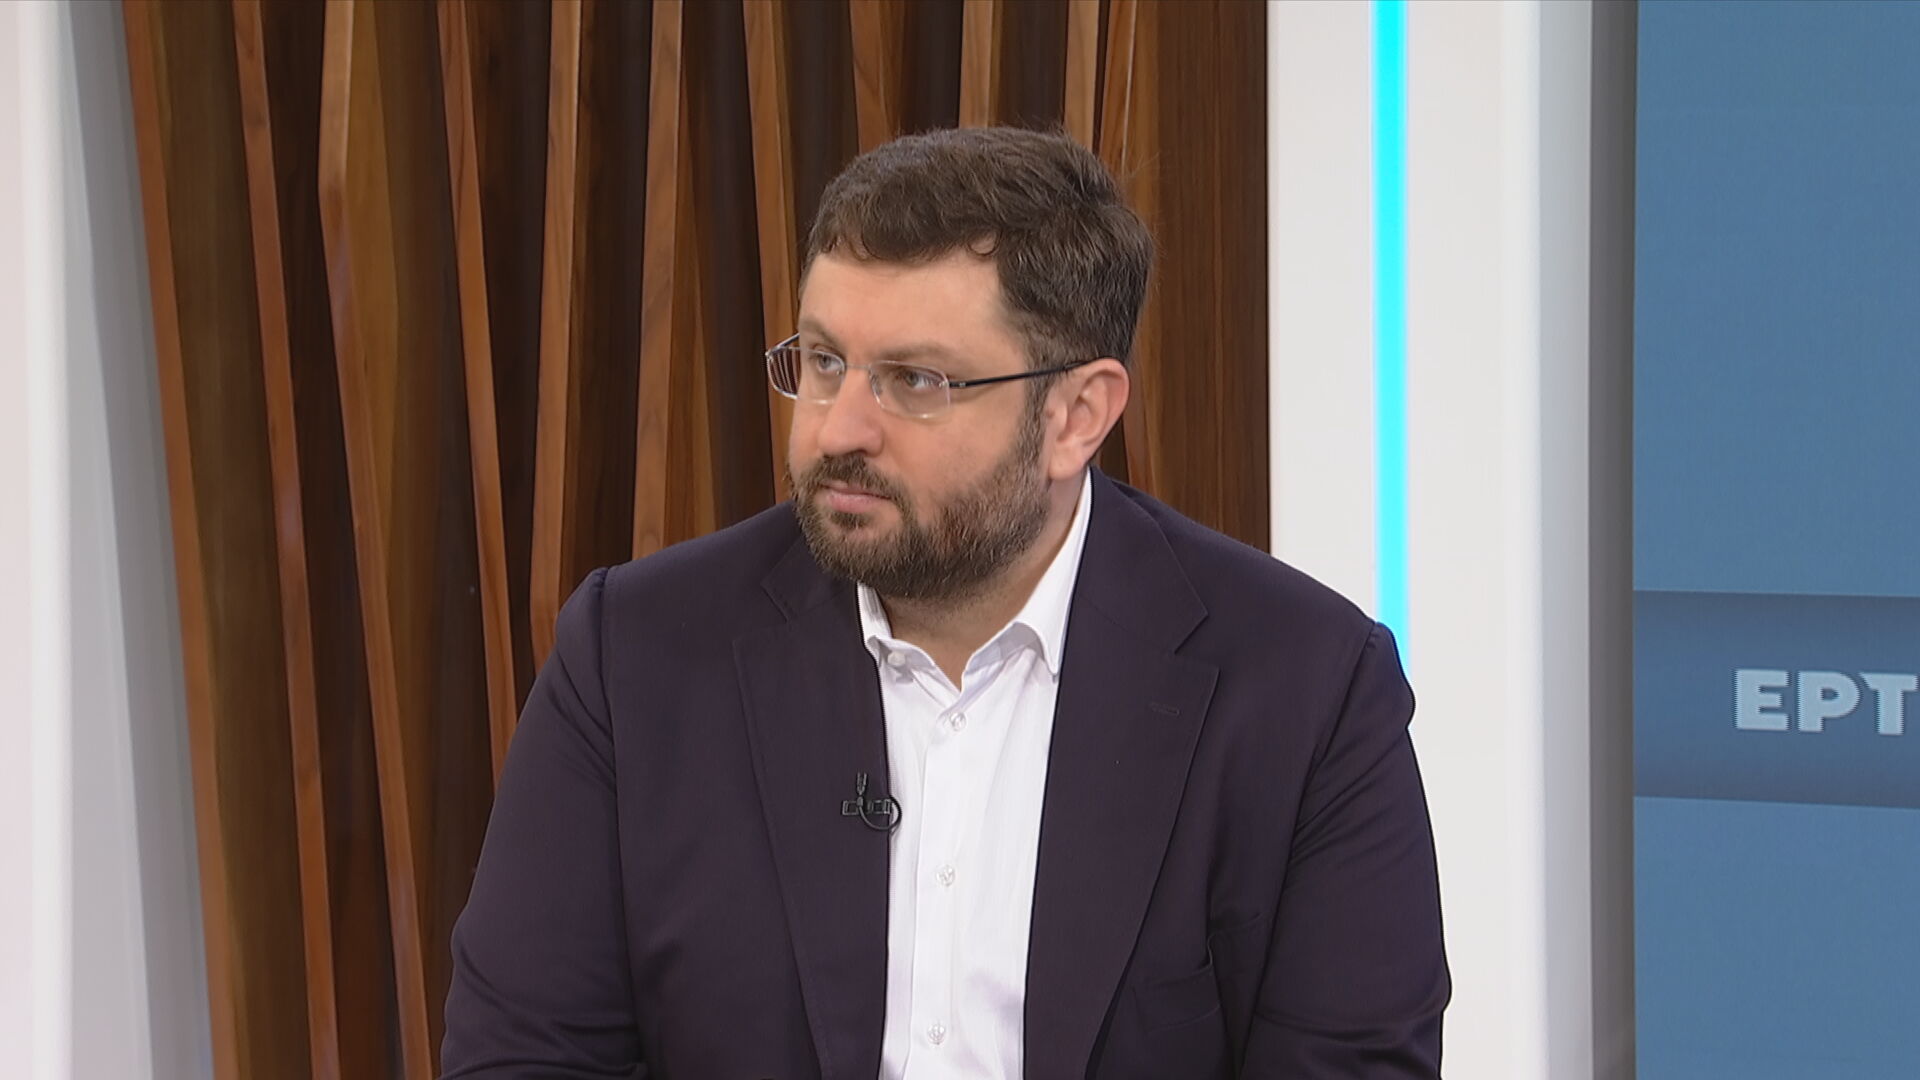 Ζαχαριάδης στην ΕΡΤ: Τα κόμματα δεν είναι εκκλησίες – Έχω αποφασίσει να είμαι στον ΣΥΡΙΖΑ και να παλέψω τις ιδέες μου